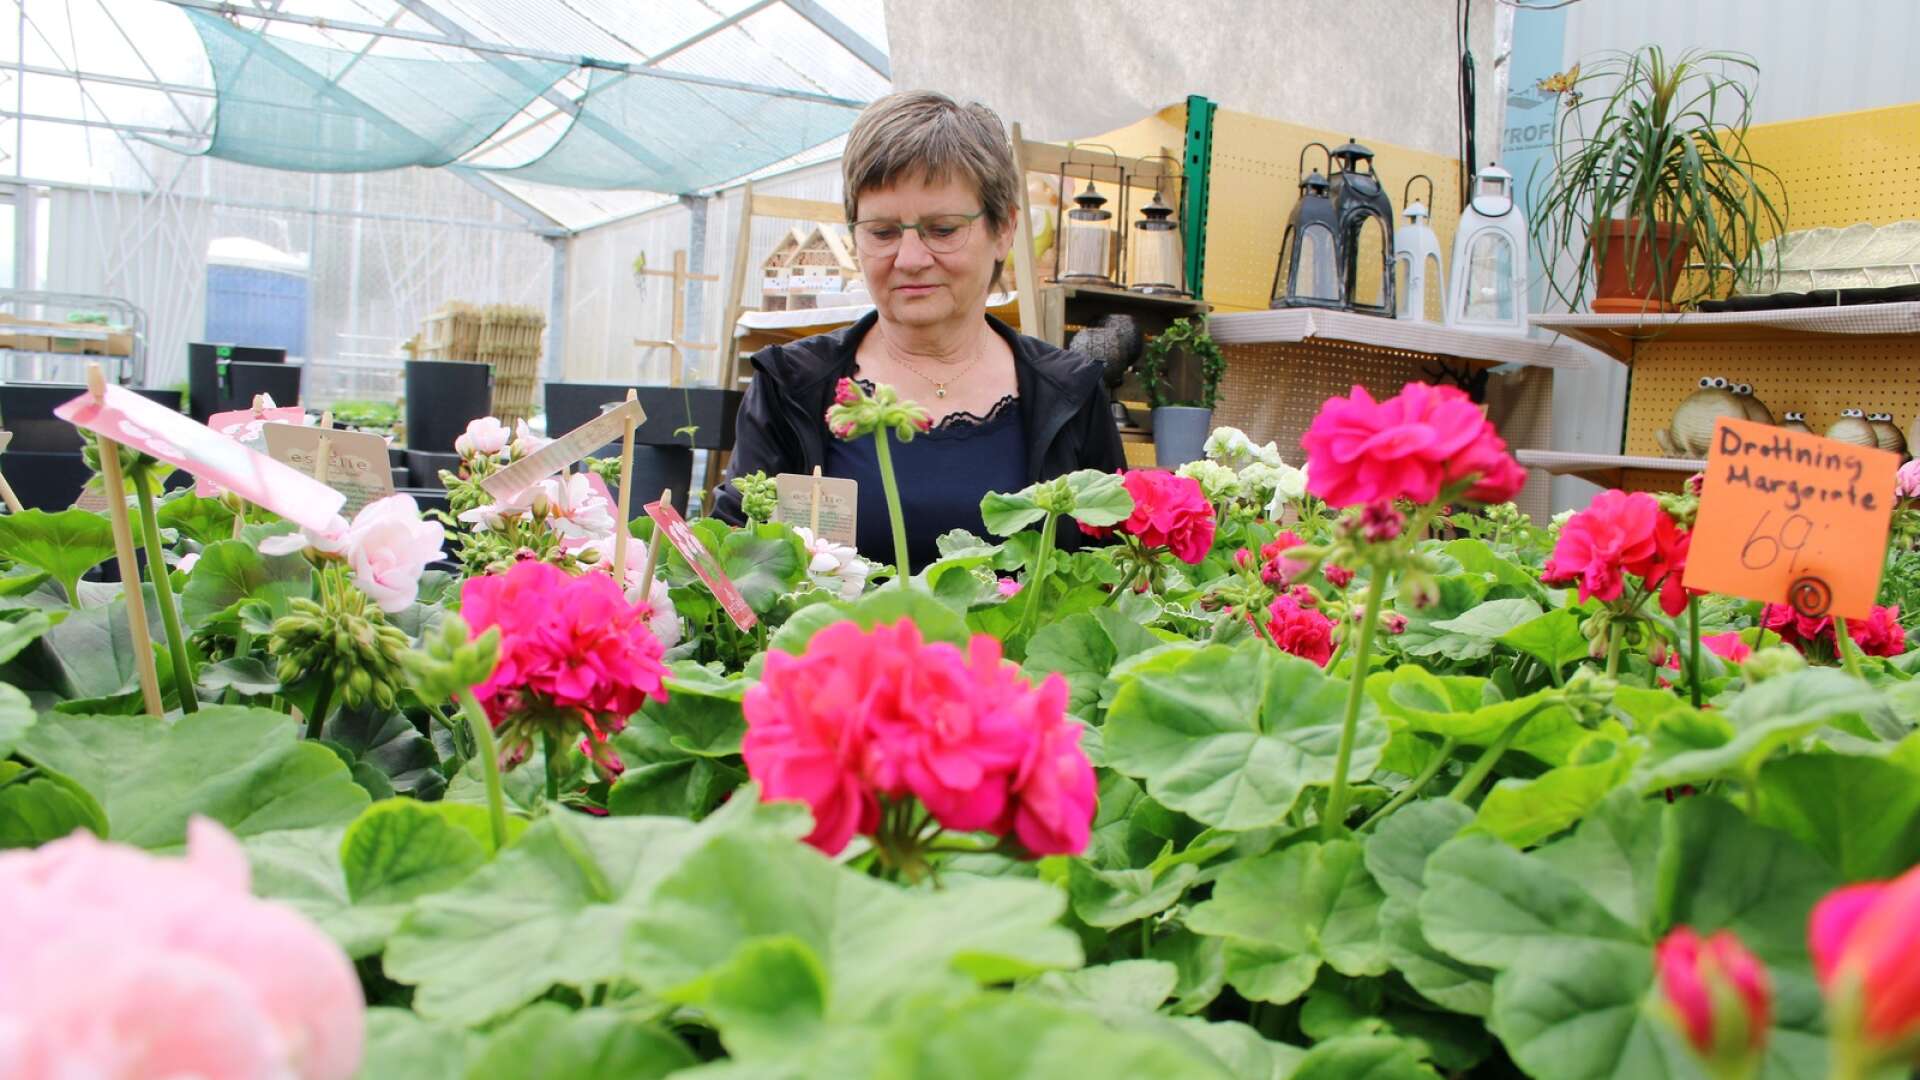 Greeks handelsträdgård är ett familjeföretag som funnits sedan 1947. Blommorna som Anneli Greek säljer i växthuset i Filipstad odlas hemma på gården i Väse.